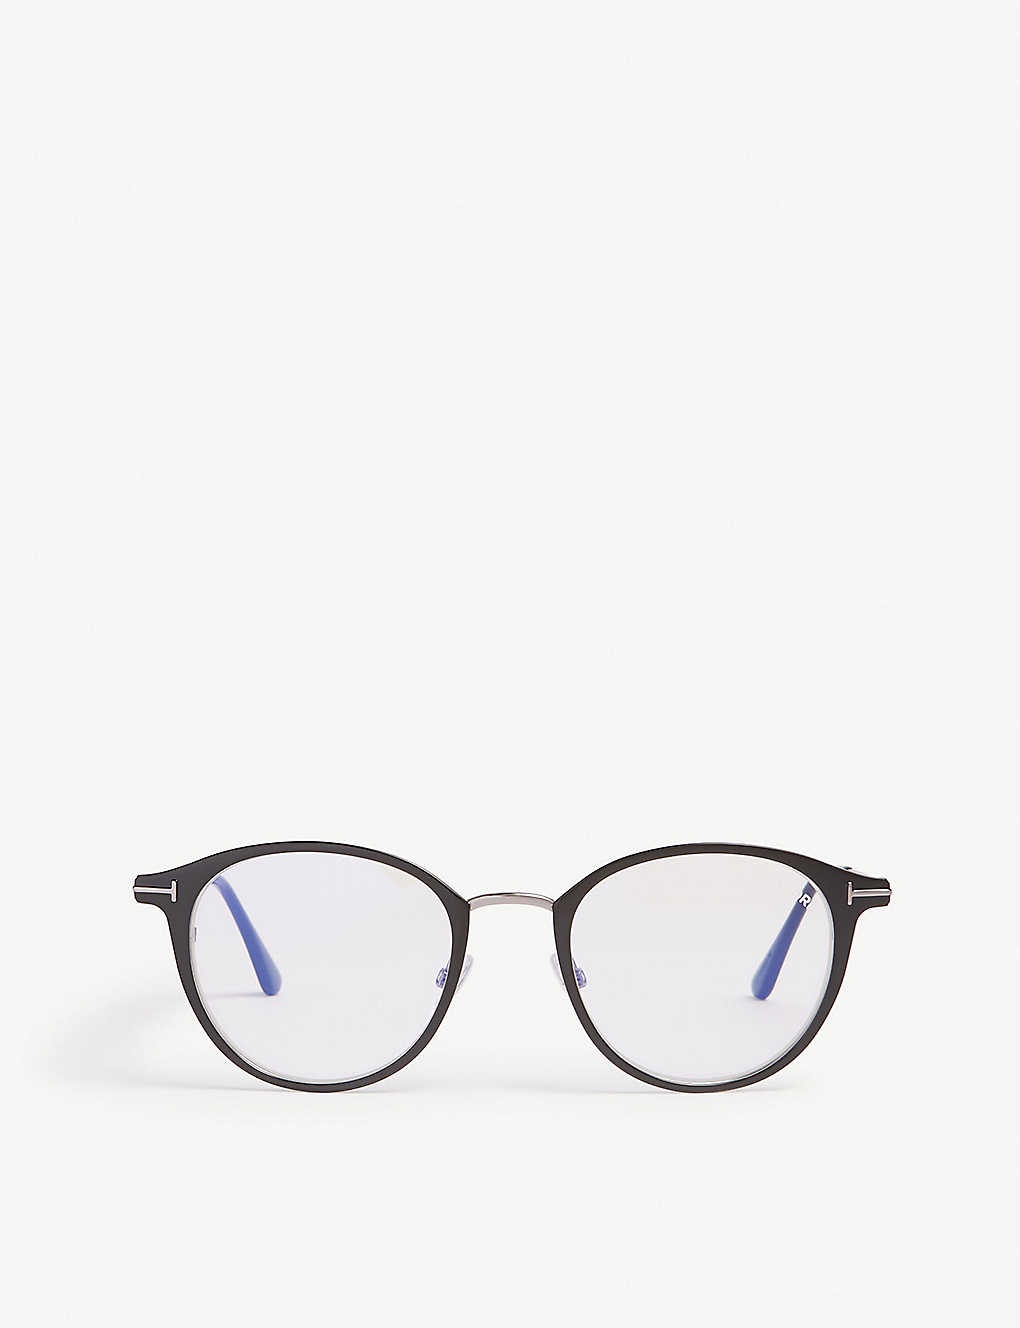 Tf5528-B phantos frame optical glasses - 1